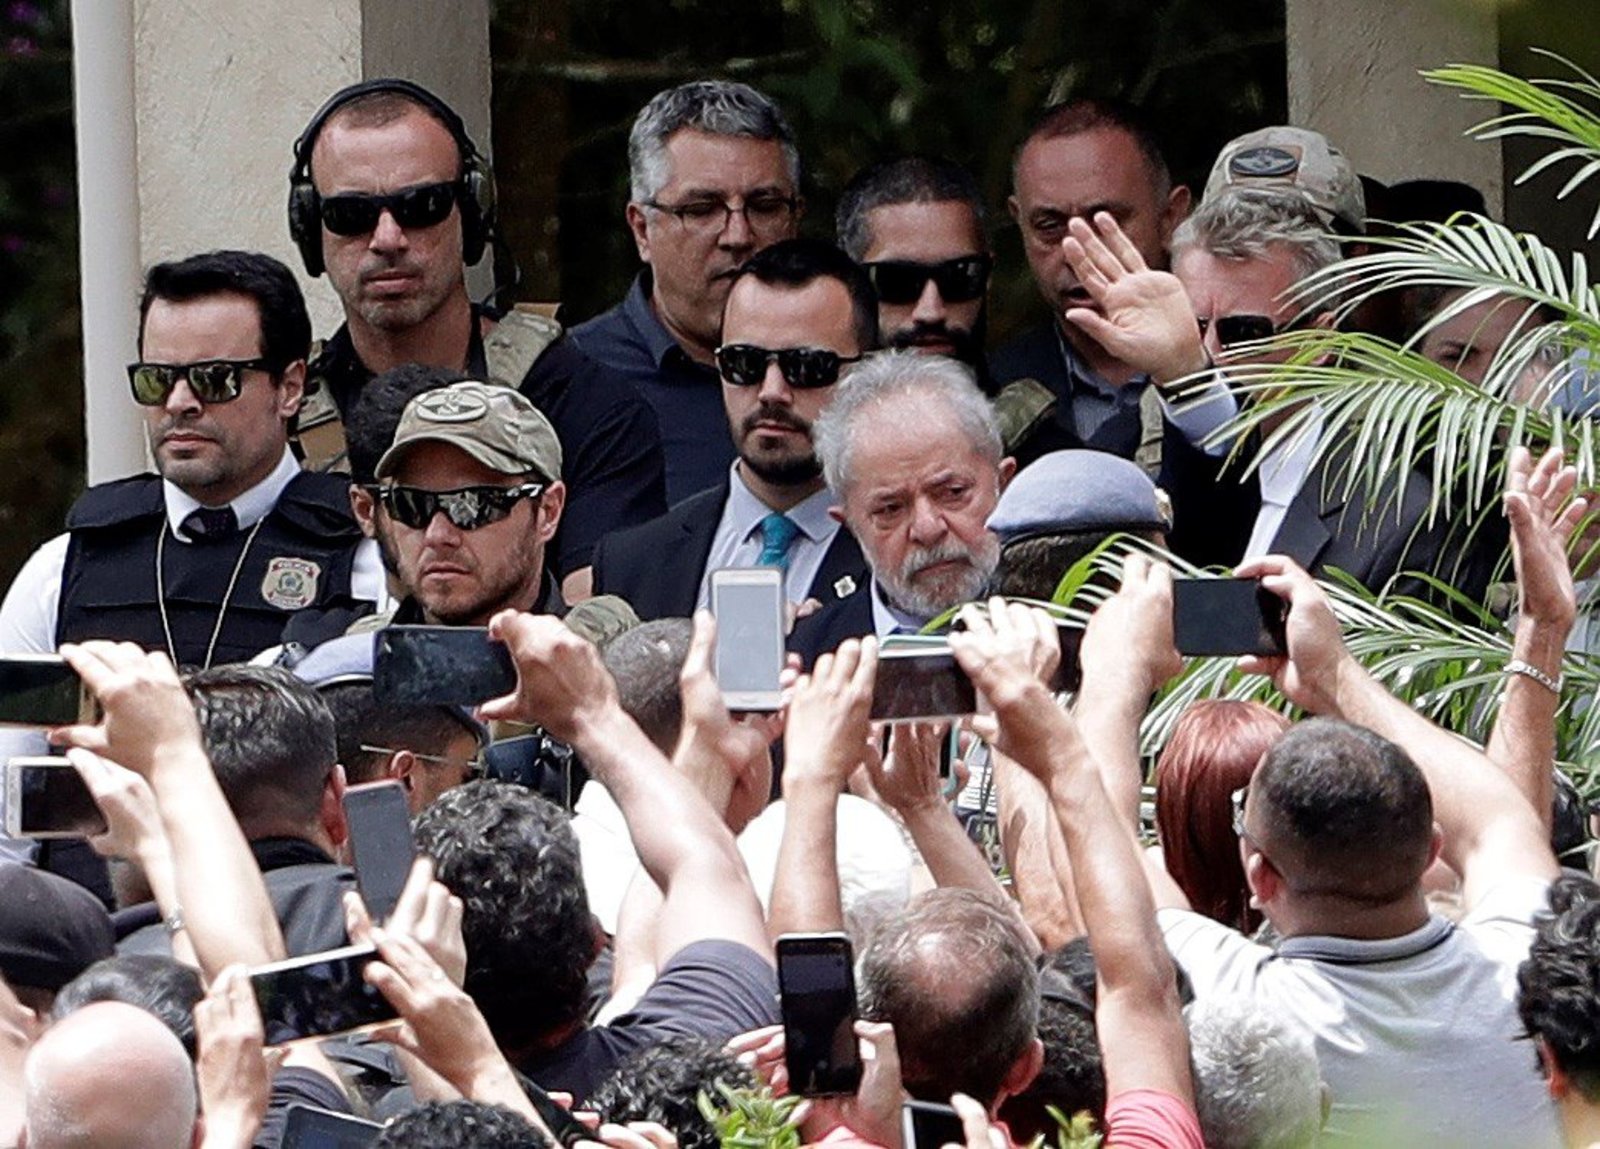 El expresidente, que vestía un traje oscuro y sin corbata, se encontró en el cementerio con correligionarios como Dilma Rousseff.